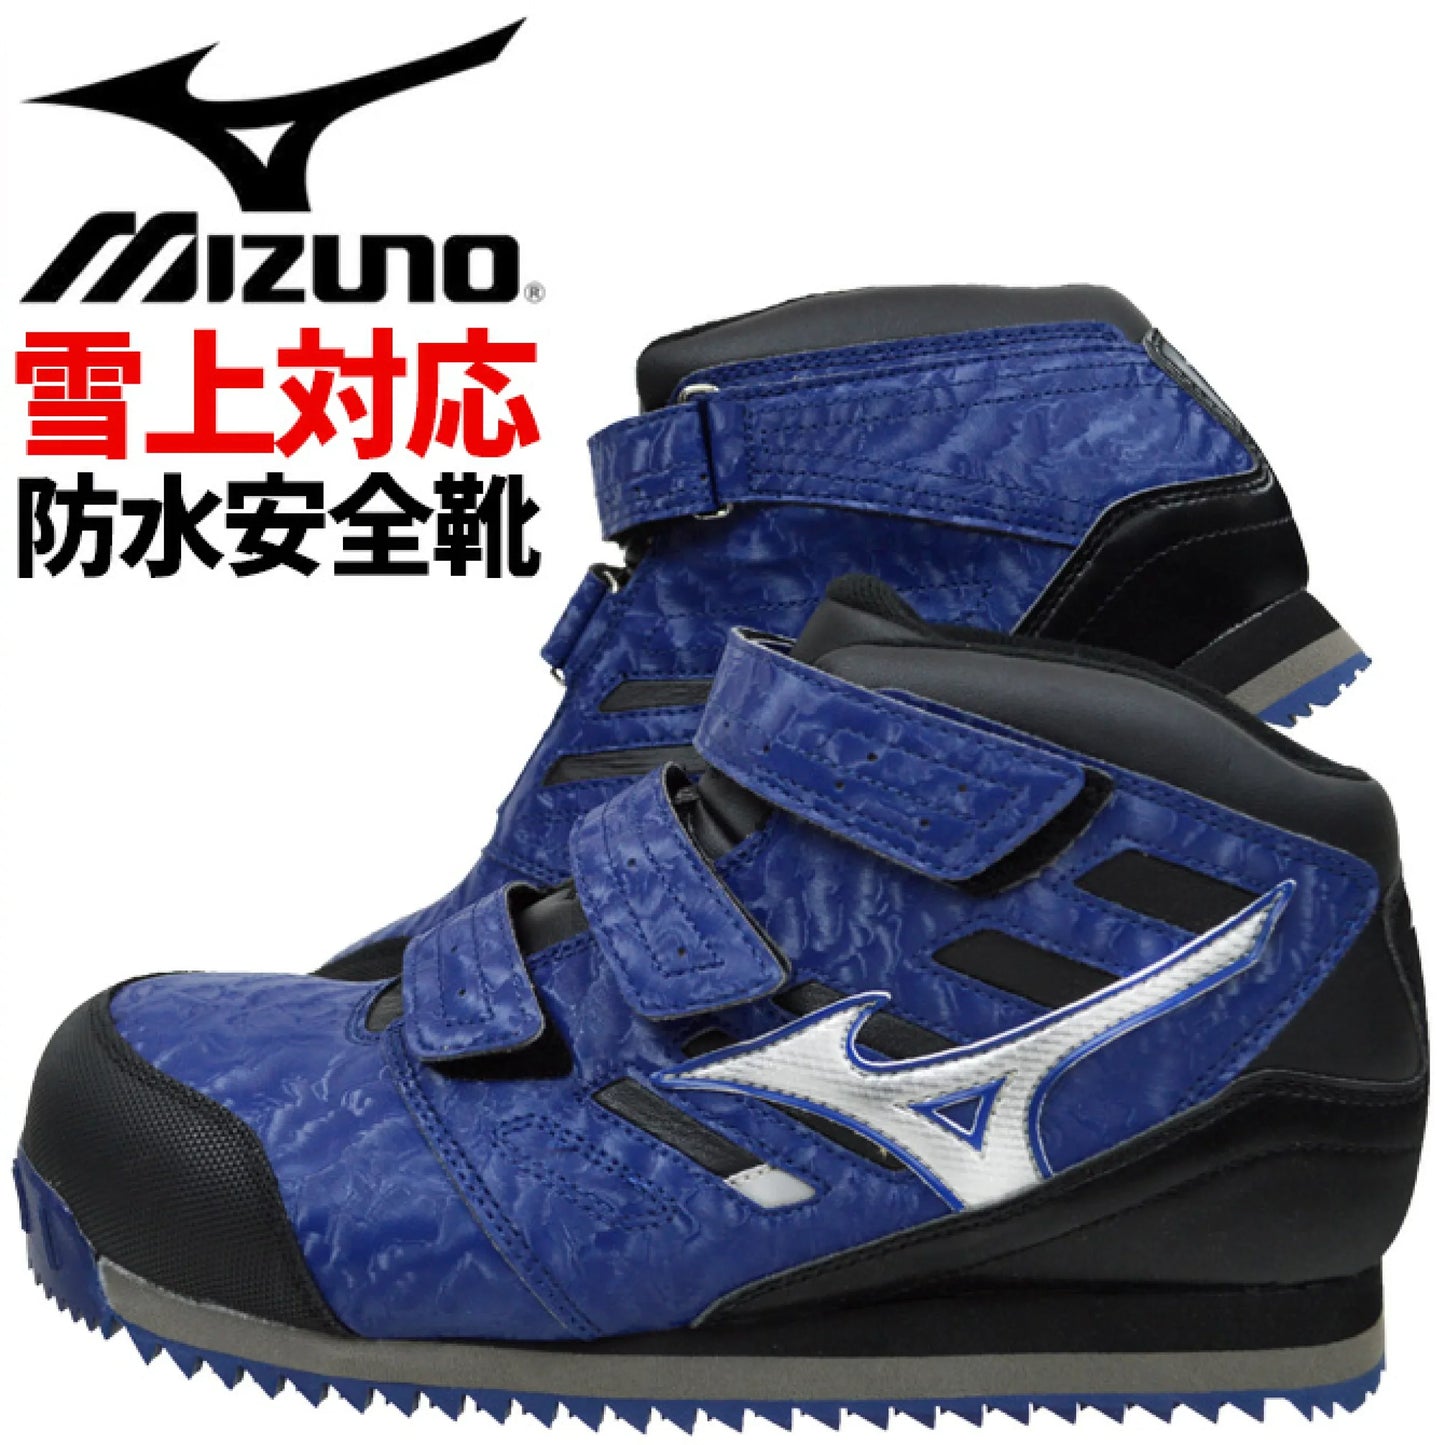 日本直送【現貨 即寄】Mizuno 限量版防水防滑安全工作鞋 28cm US10.5 EU44.5